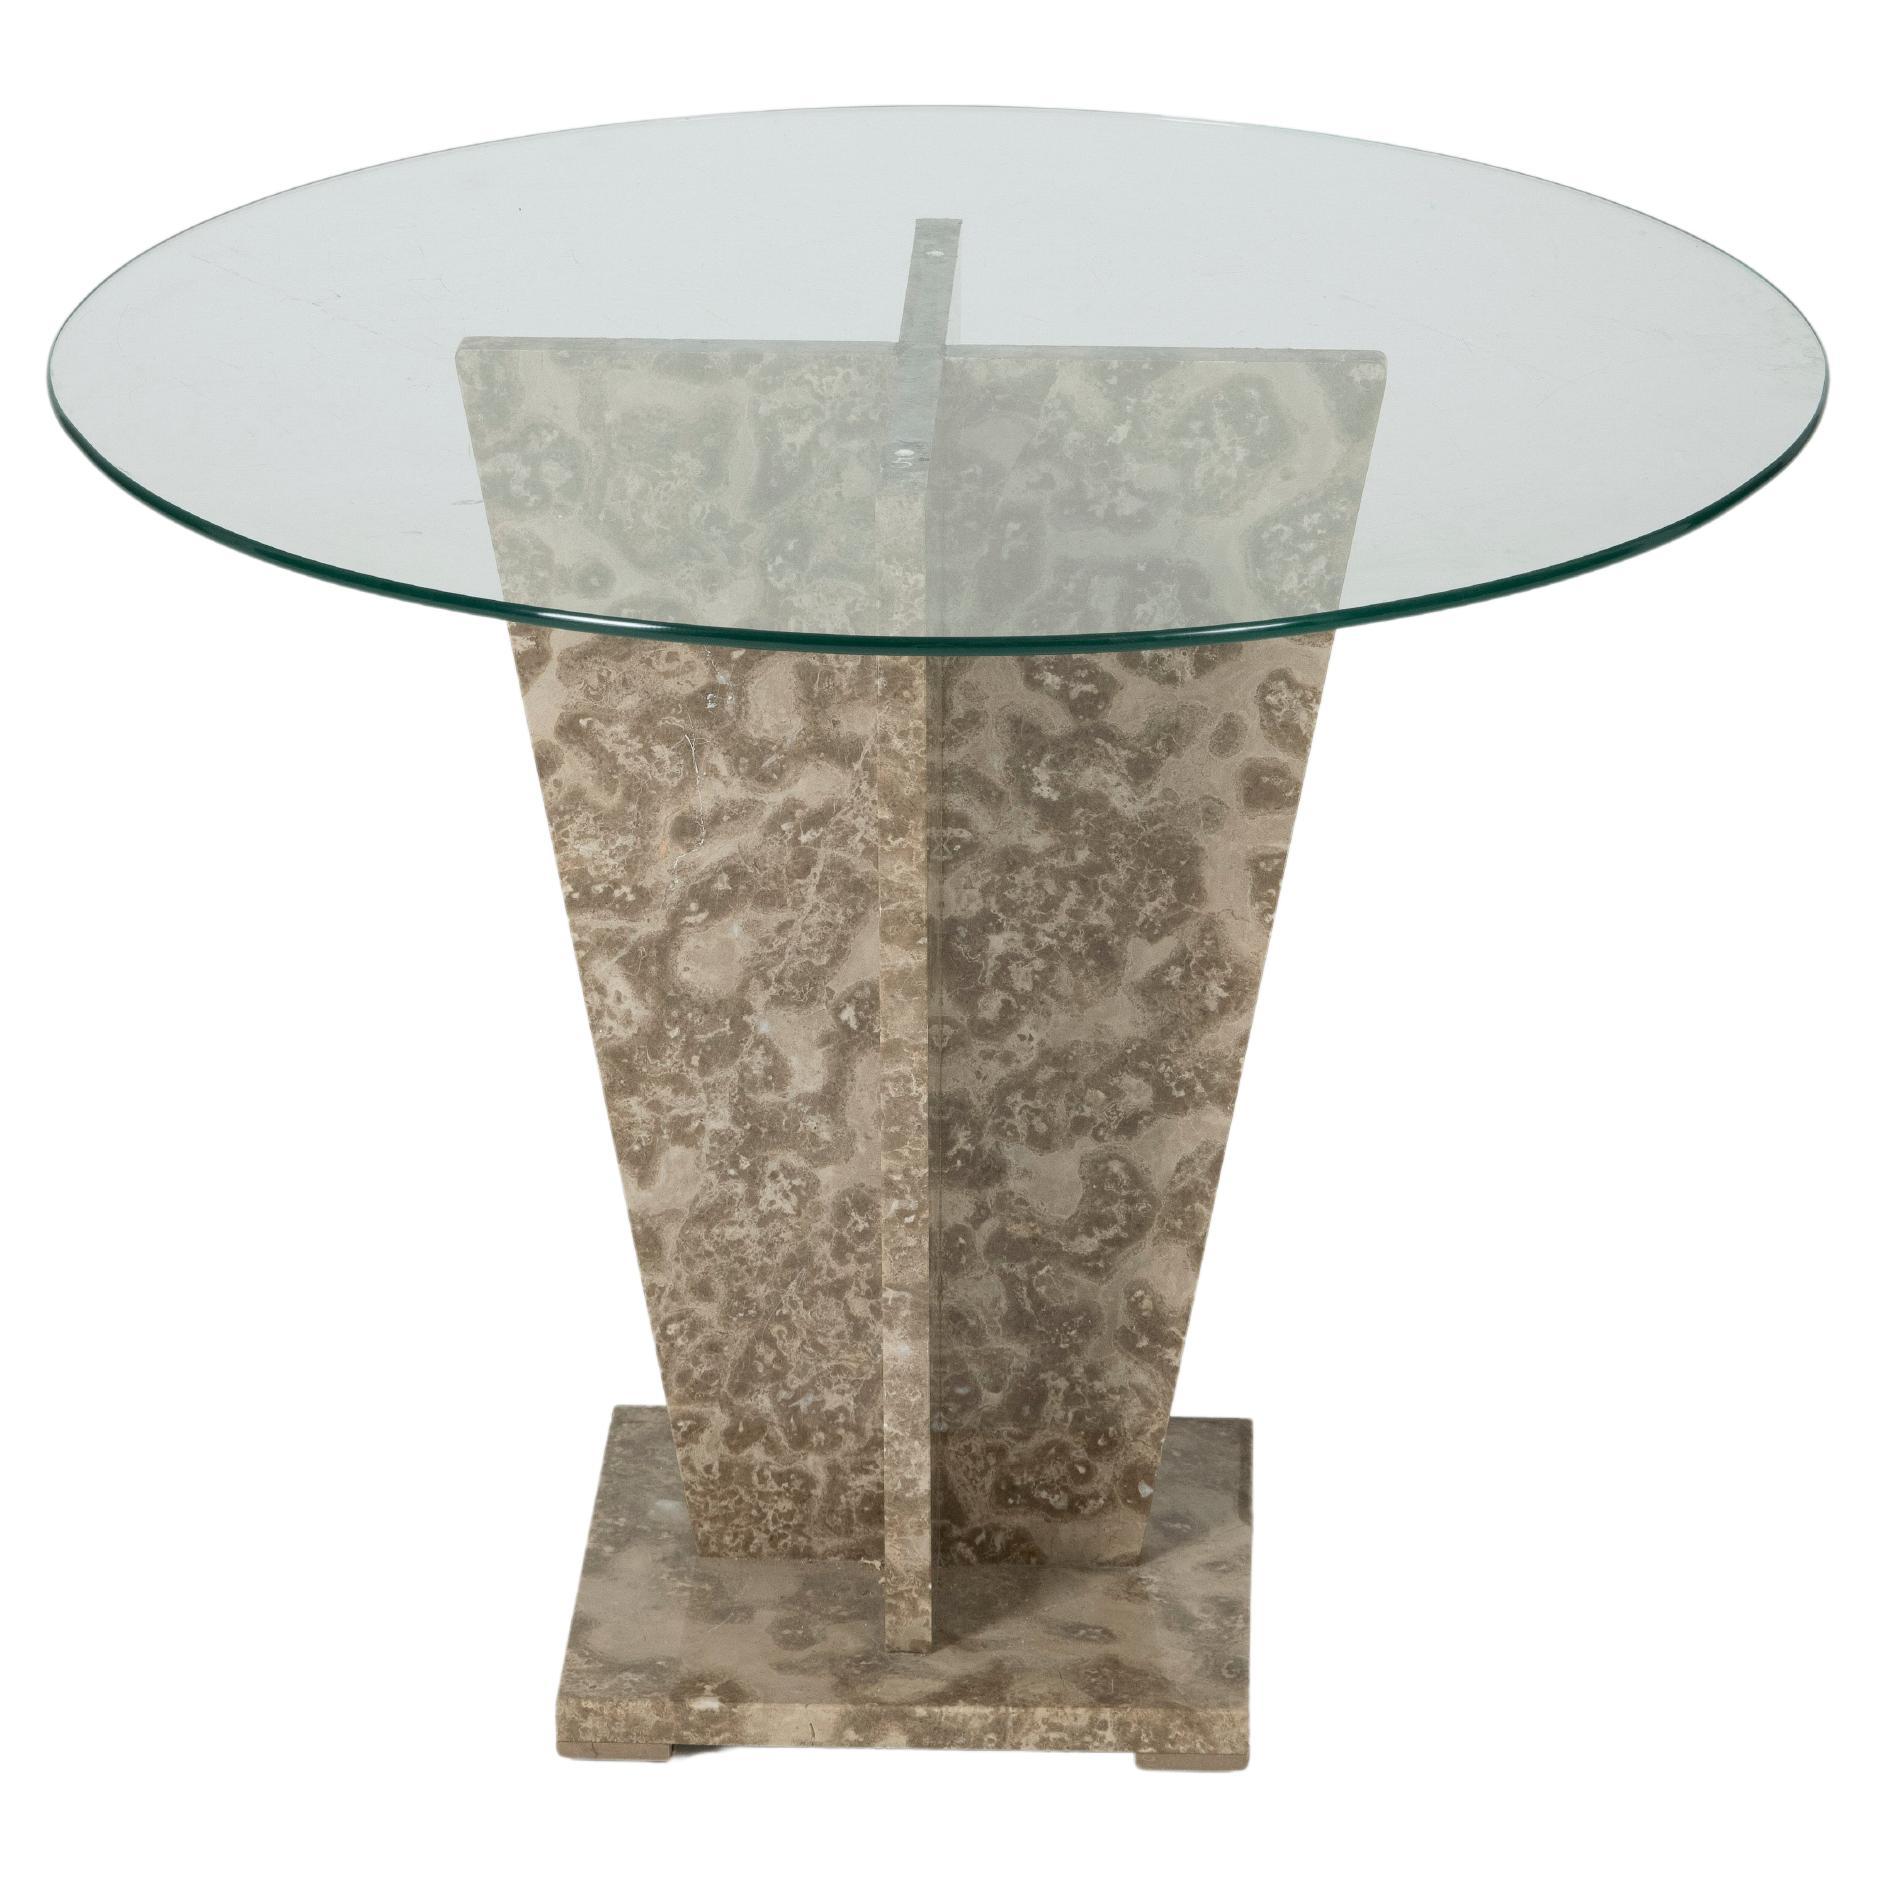 Table d'appoint avec base en marbre et plateau en verre, années 1970. Très bon état.
LP690